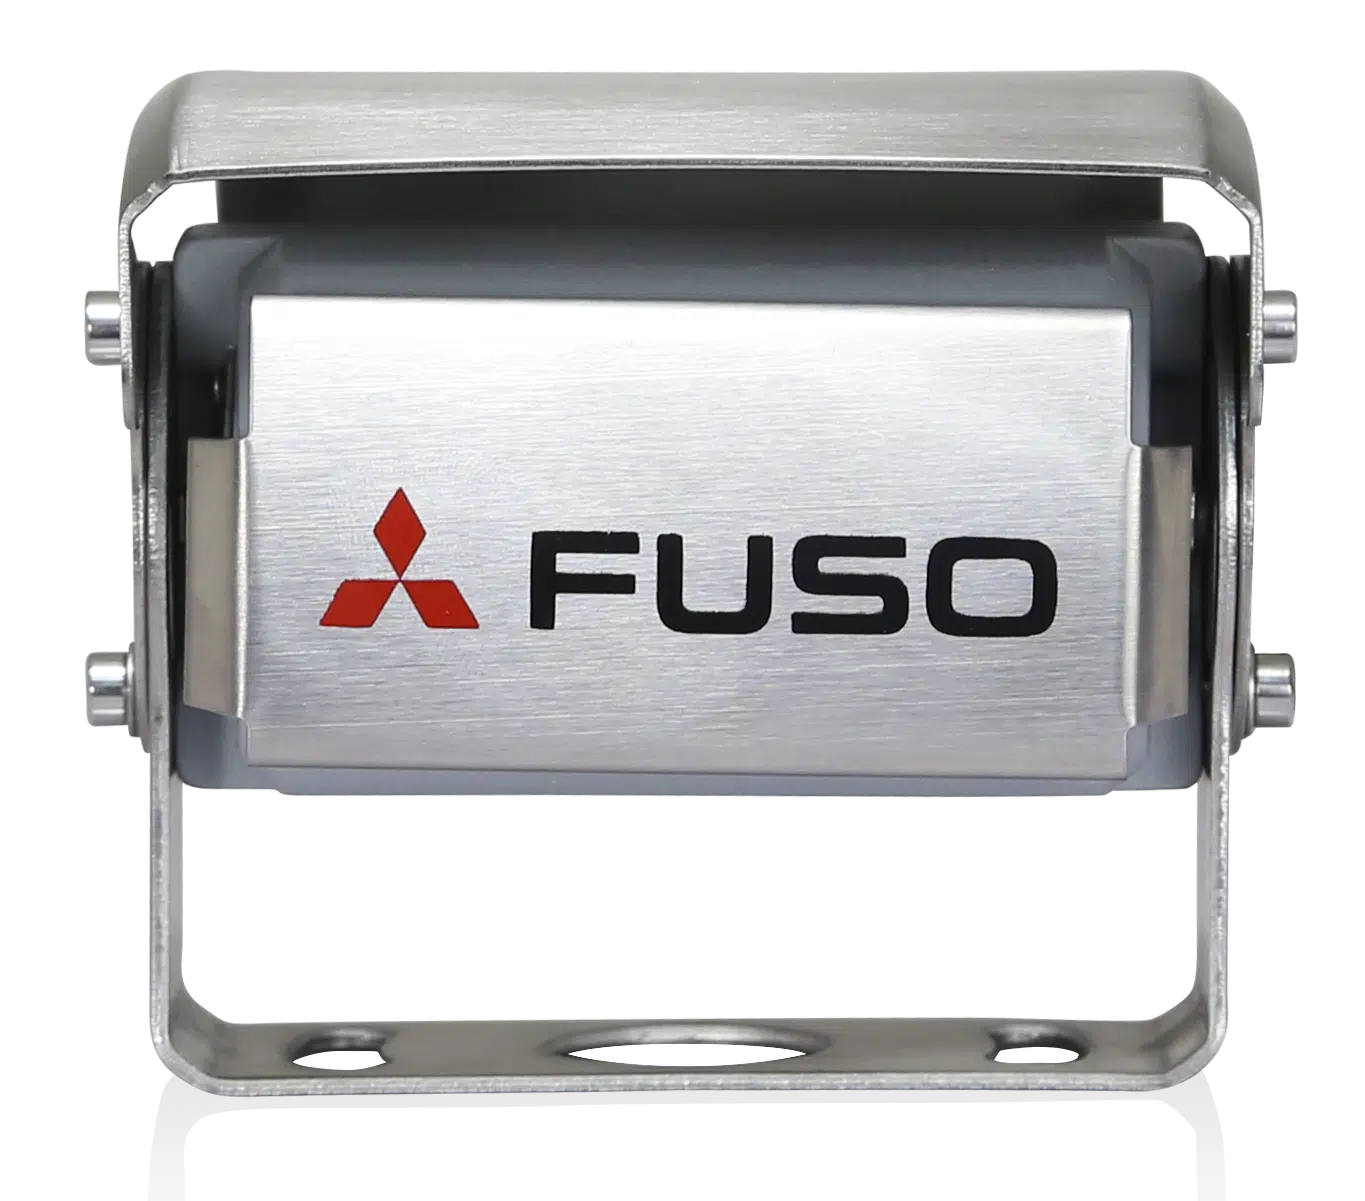 Die FUSO Rückfahrkamera ist ein leistungsfähiges Produkt, das die Vorteile bester Sicht und höchster Sicherheit vereint. Sie verfügt über ein integriertes Mikrofon, das für eine verbesserte Wahrnehmung des Bereichs hinter dem Fahrzeug sorgt. Bei Dunkelheit wird die Displayfarbe automatisch geändert, um dem Fahrer eine optimale Sicht zu ermöglichen. Das System kann mit 12 und 24 V betrieben werden und erfüllt strengste FUSO Prüf-anforderungen. Die Kamera ist wasserdicht gemäß IP69K. Das Display besitzt eine Auflösung von 800x480x3 (RGB).